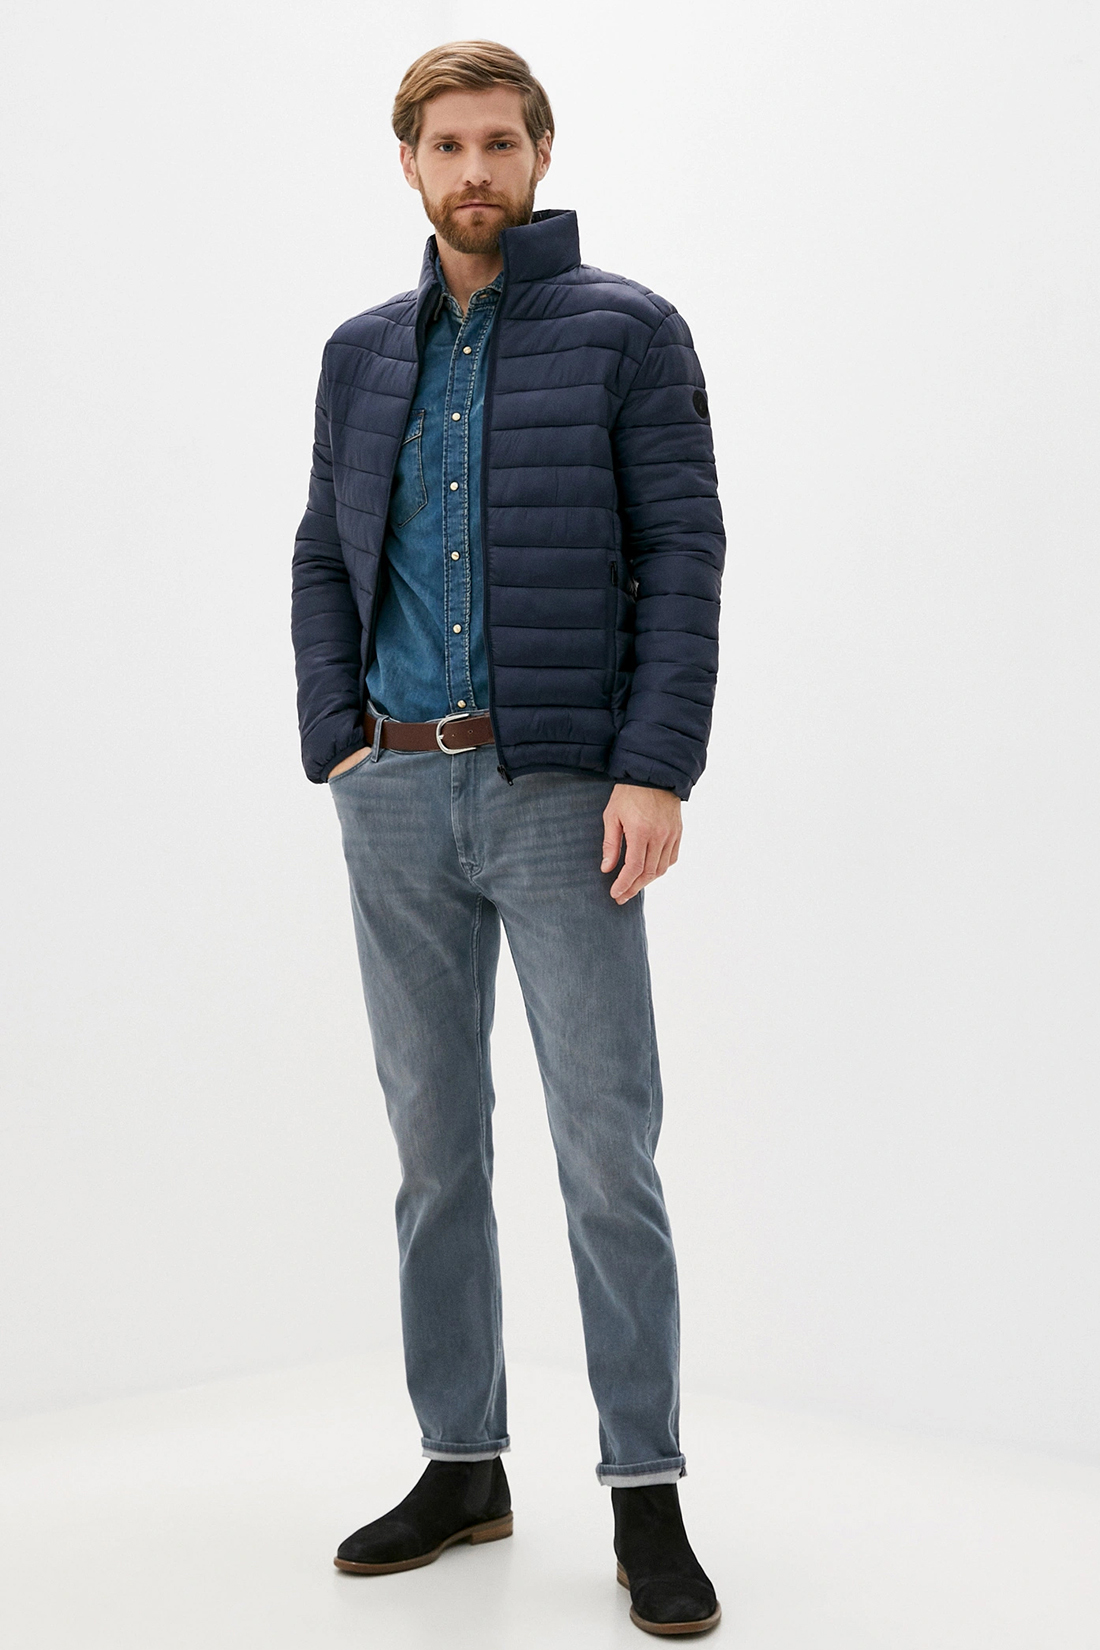 Куртка (Эко пух) (арт. baon B540520), размер XL, цвет синий Куртка (Эко пух) (арт. baon B540520) - фото 5